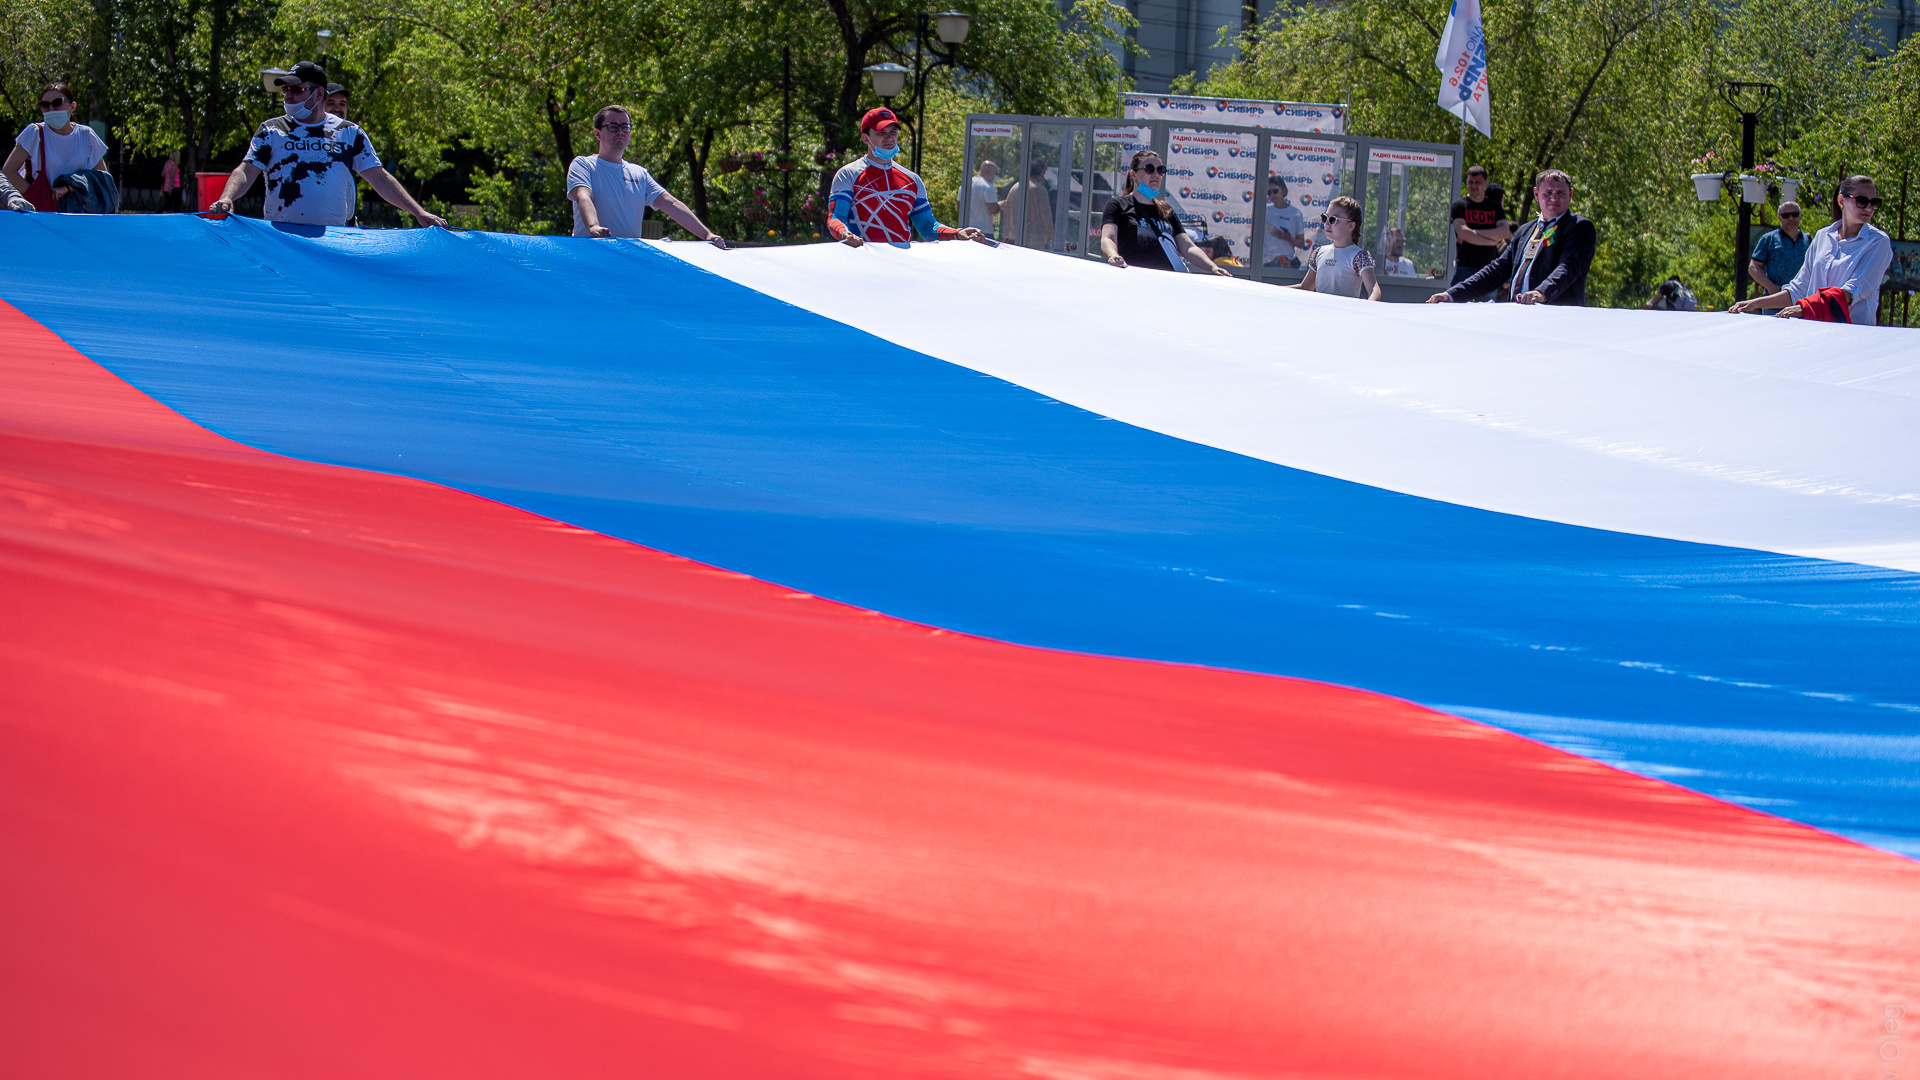 Лазертаг на площади, воркаут в ОДОРА — чем еще заняться в День России в Чите? Полная программа мероприятий